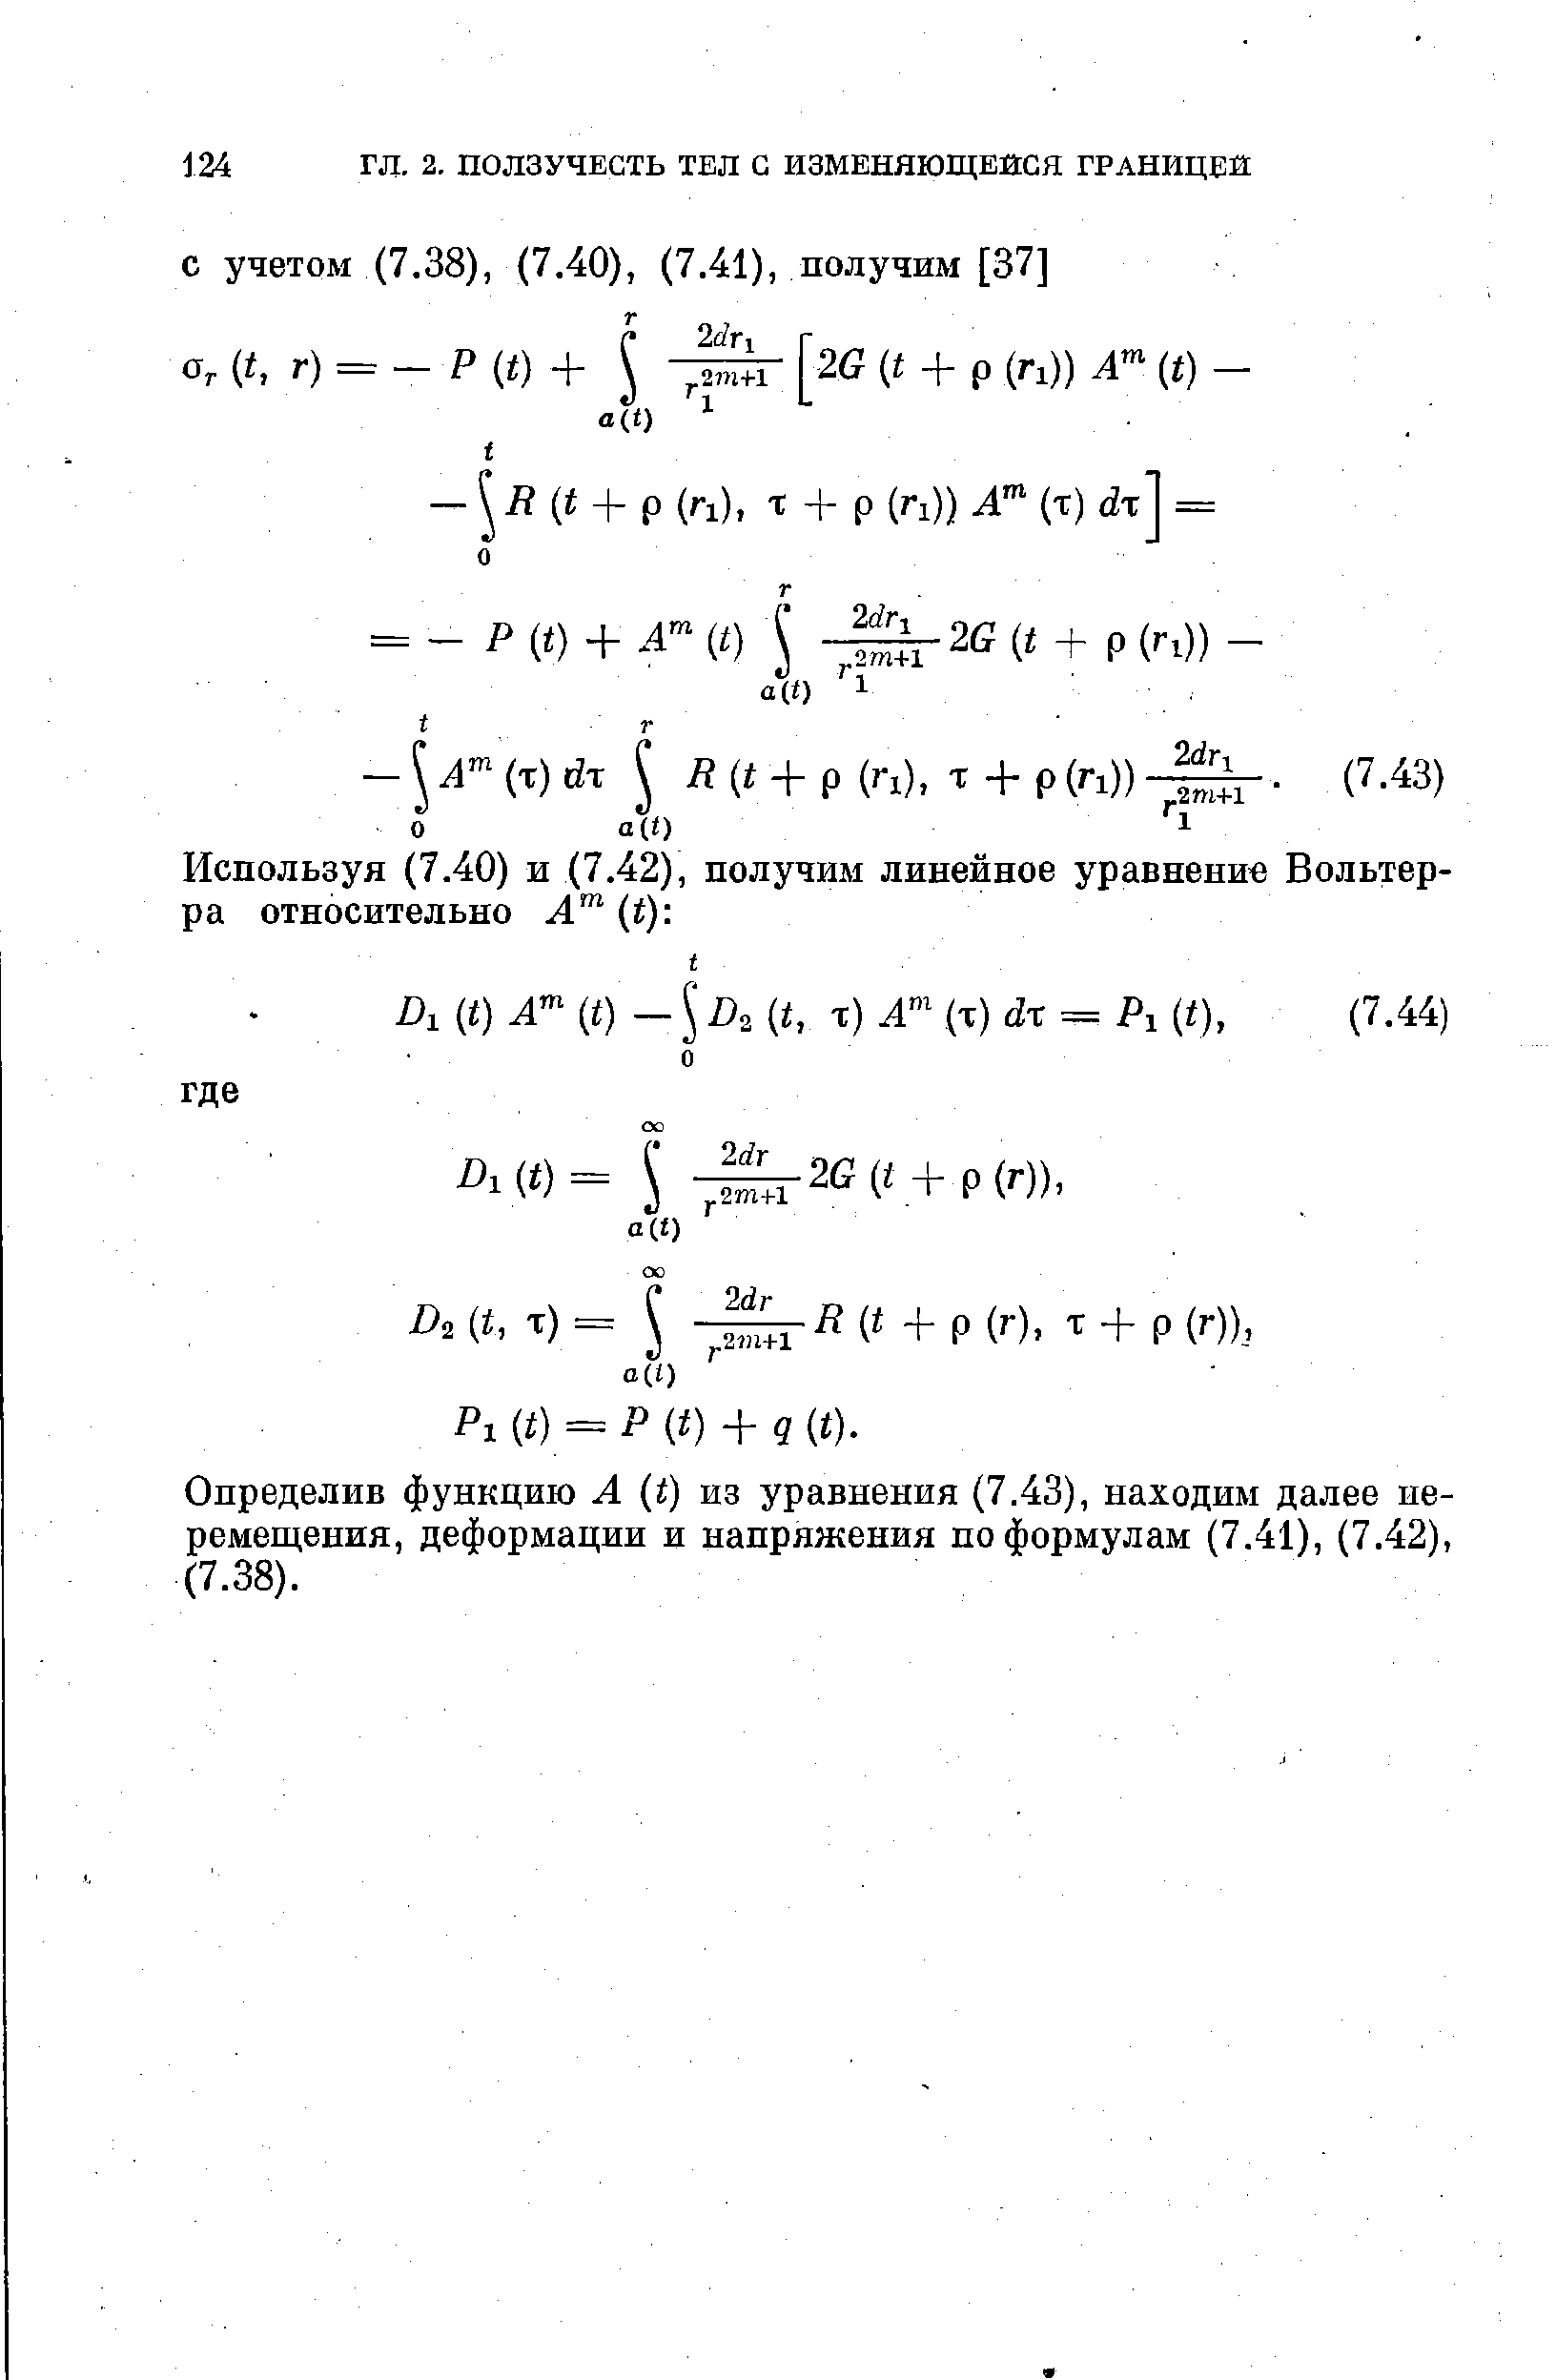 Определив функцию А (t) из уравнения (7.43), находим далее перемещения, деформации и напряжения по формулам (7.41), (7.42), (7.38).
